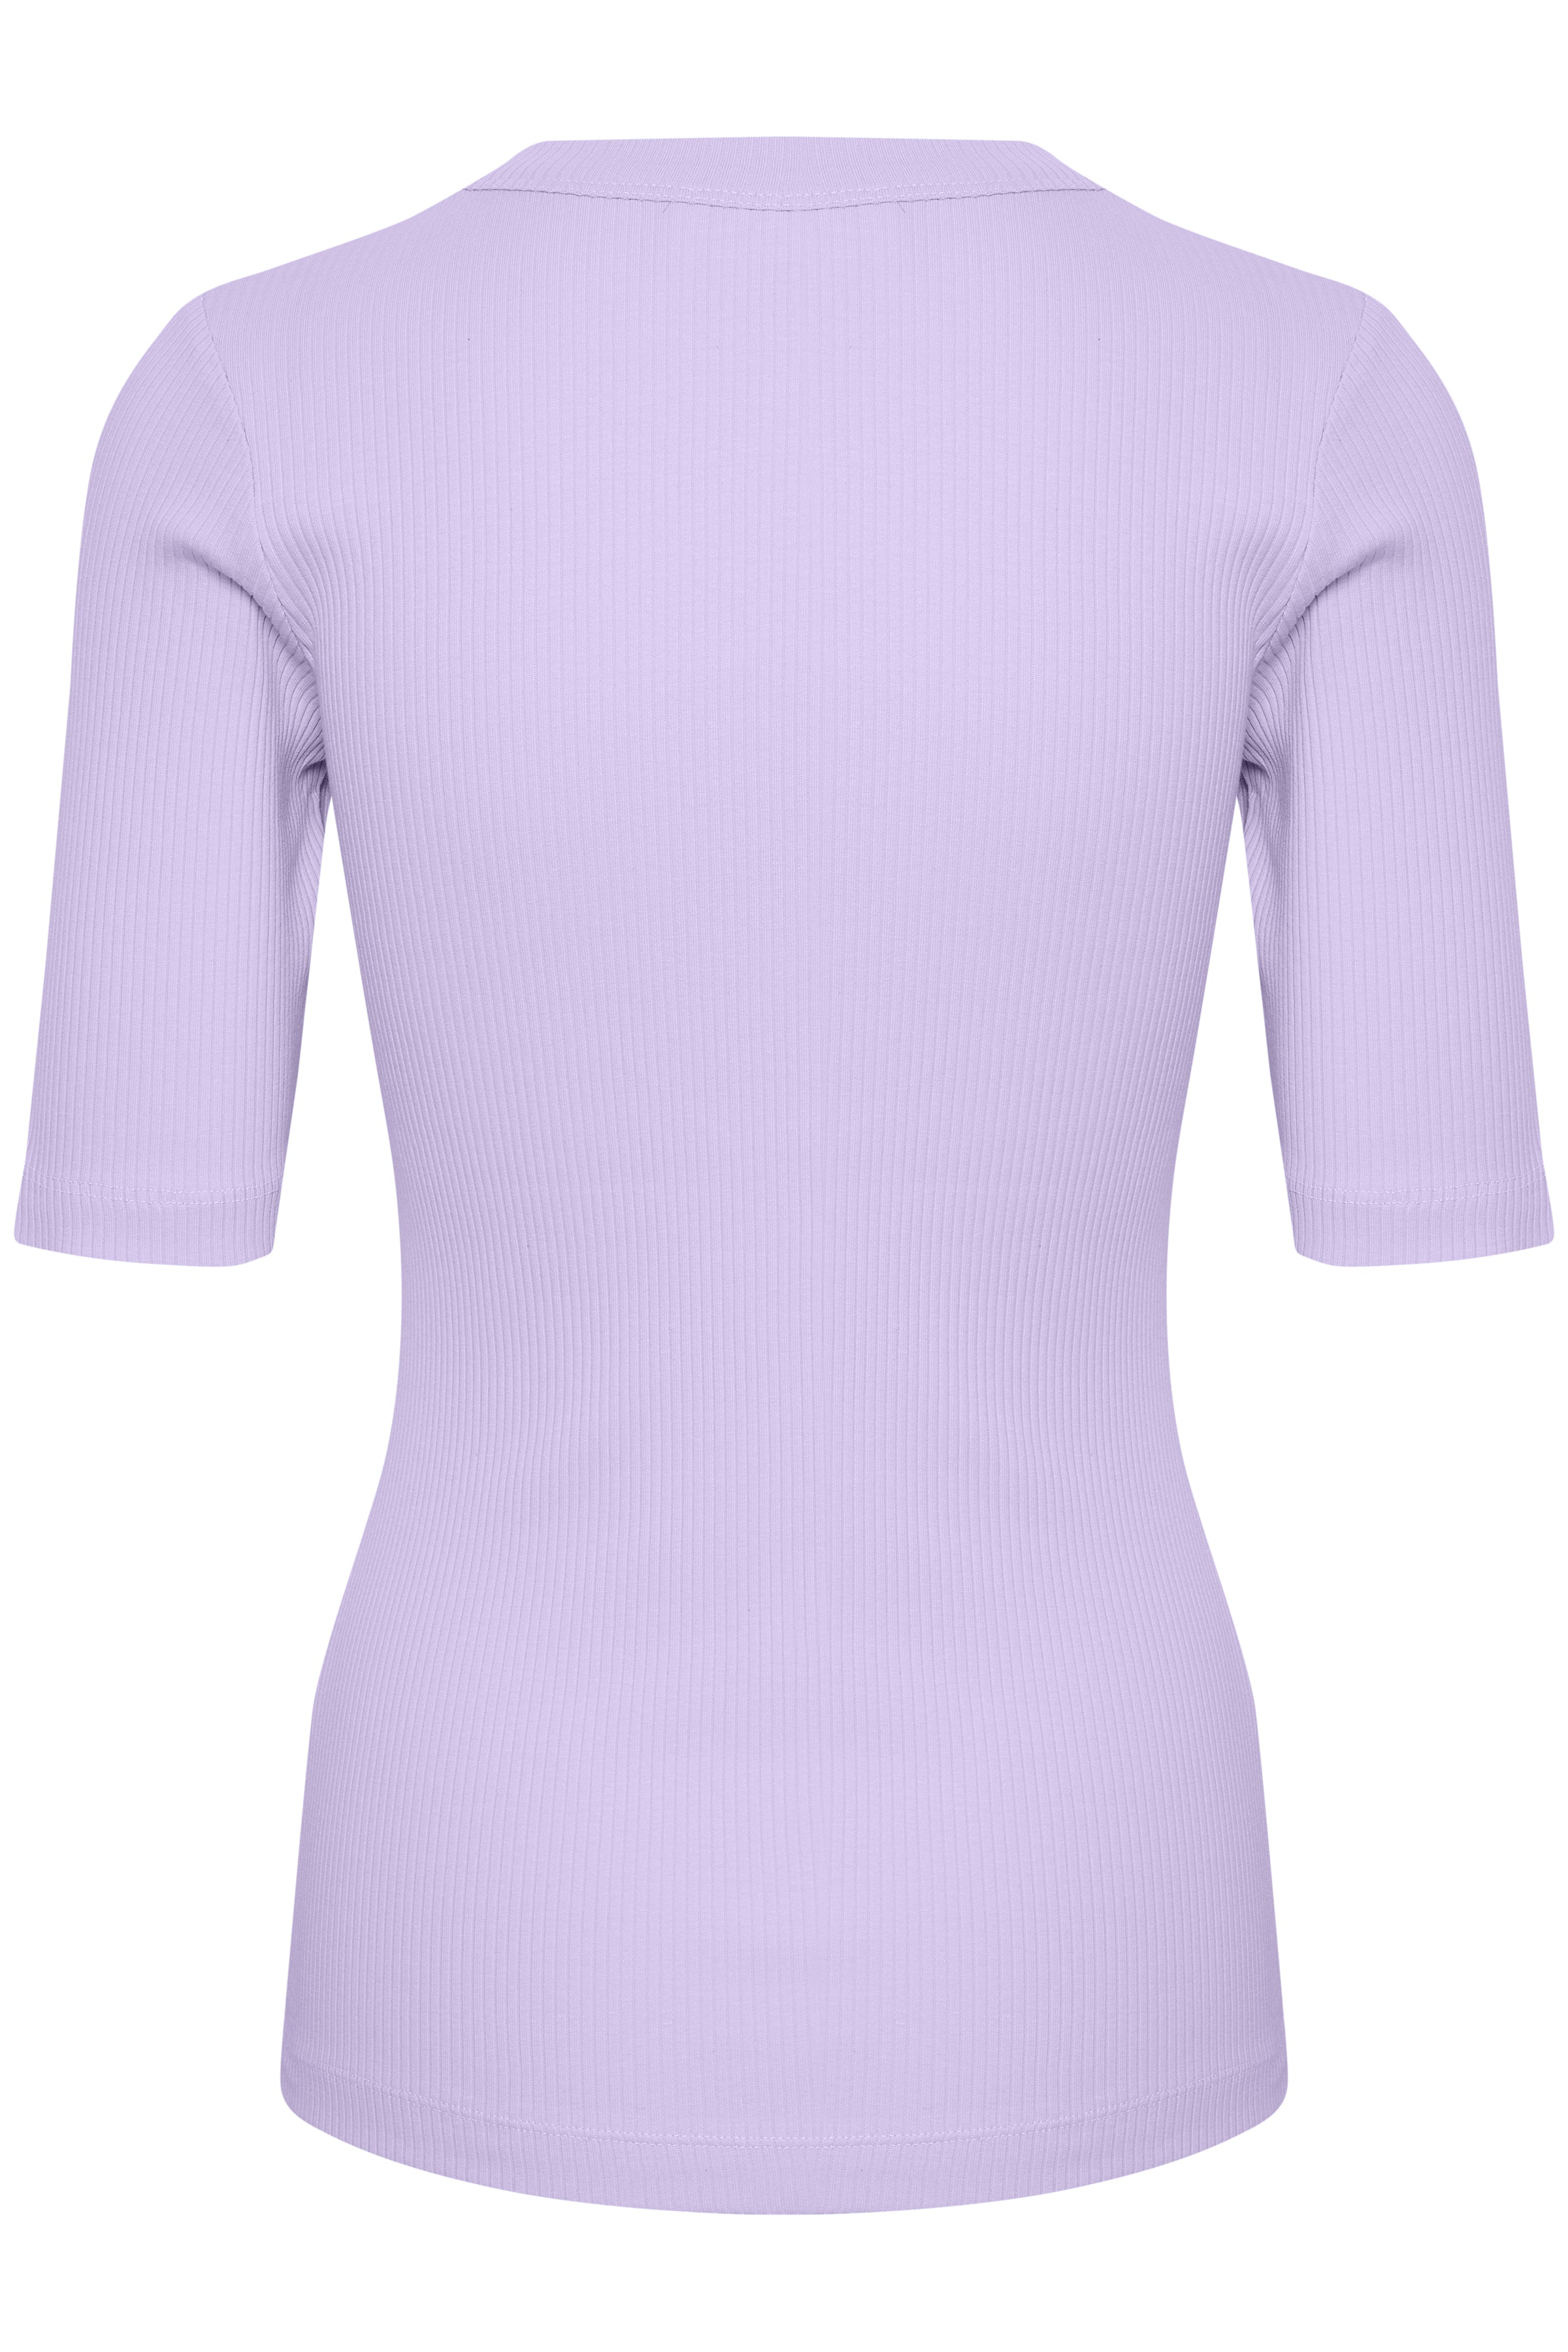 DagnaIW T-Shirt - Lavender